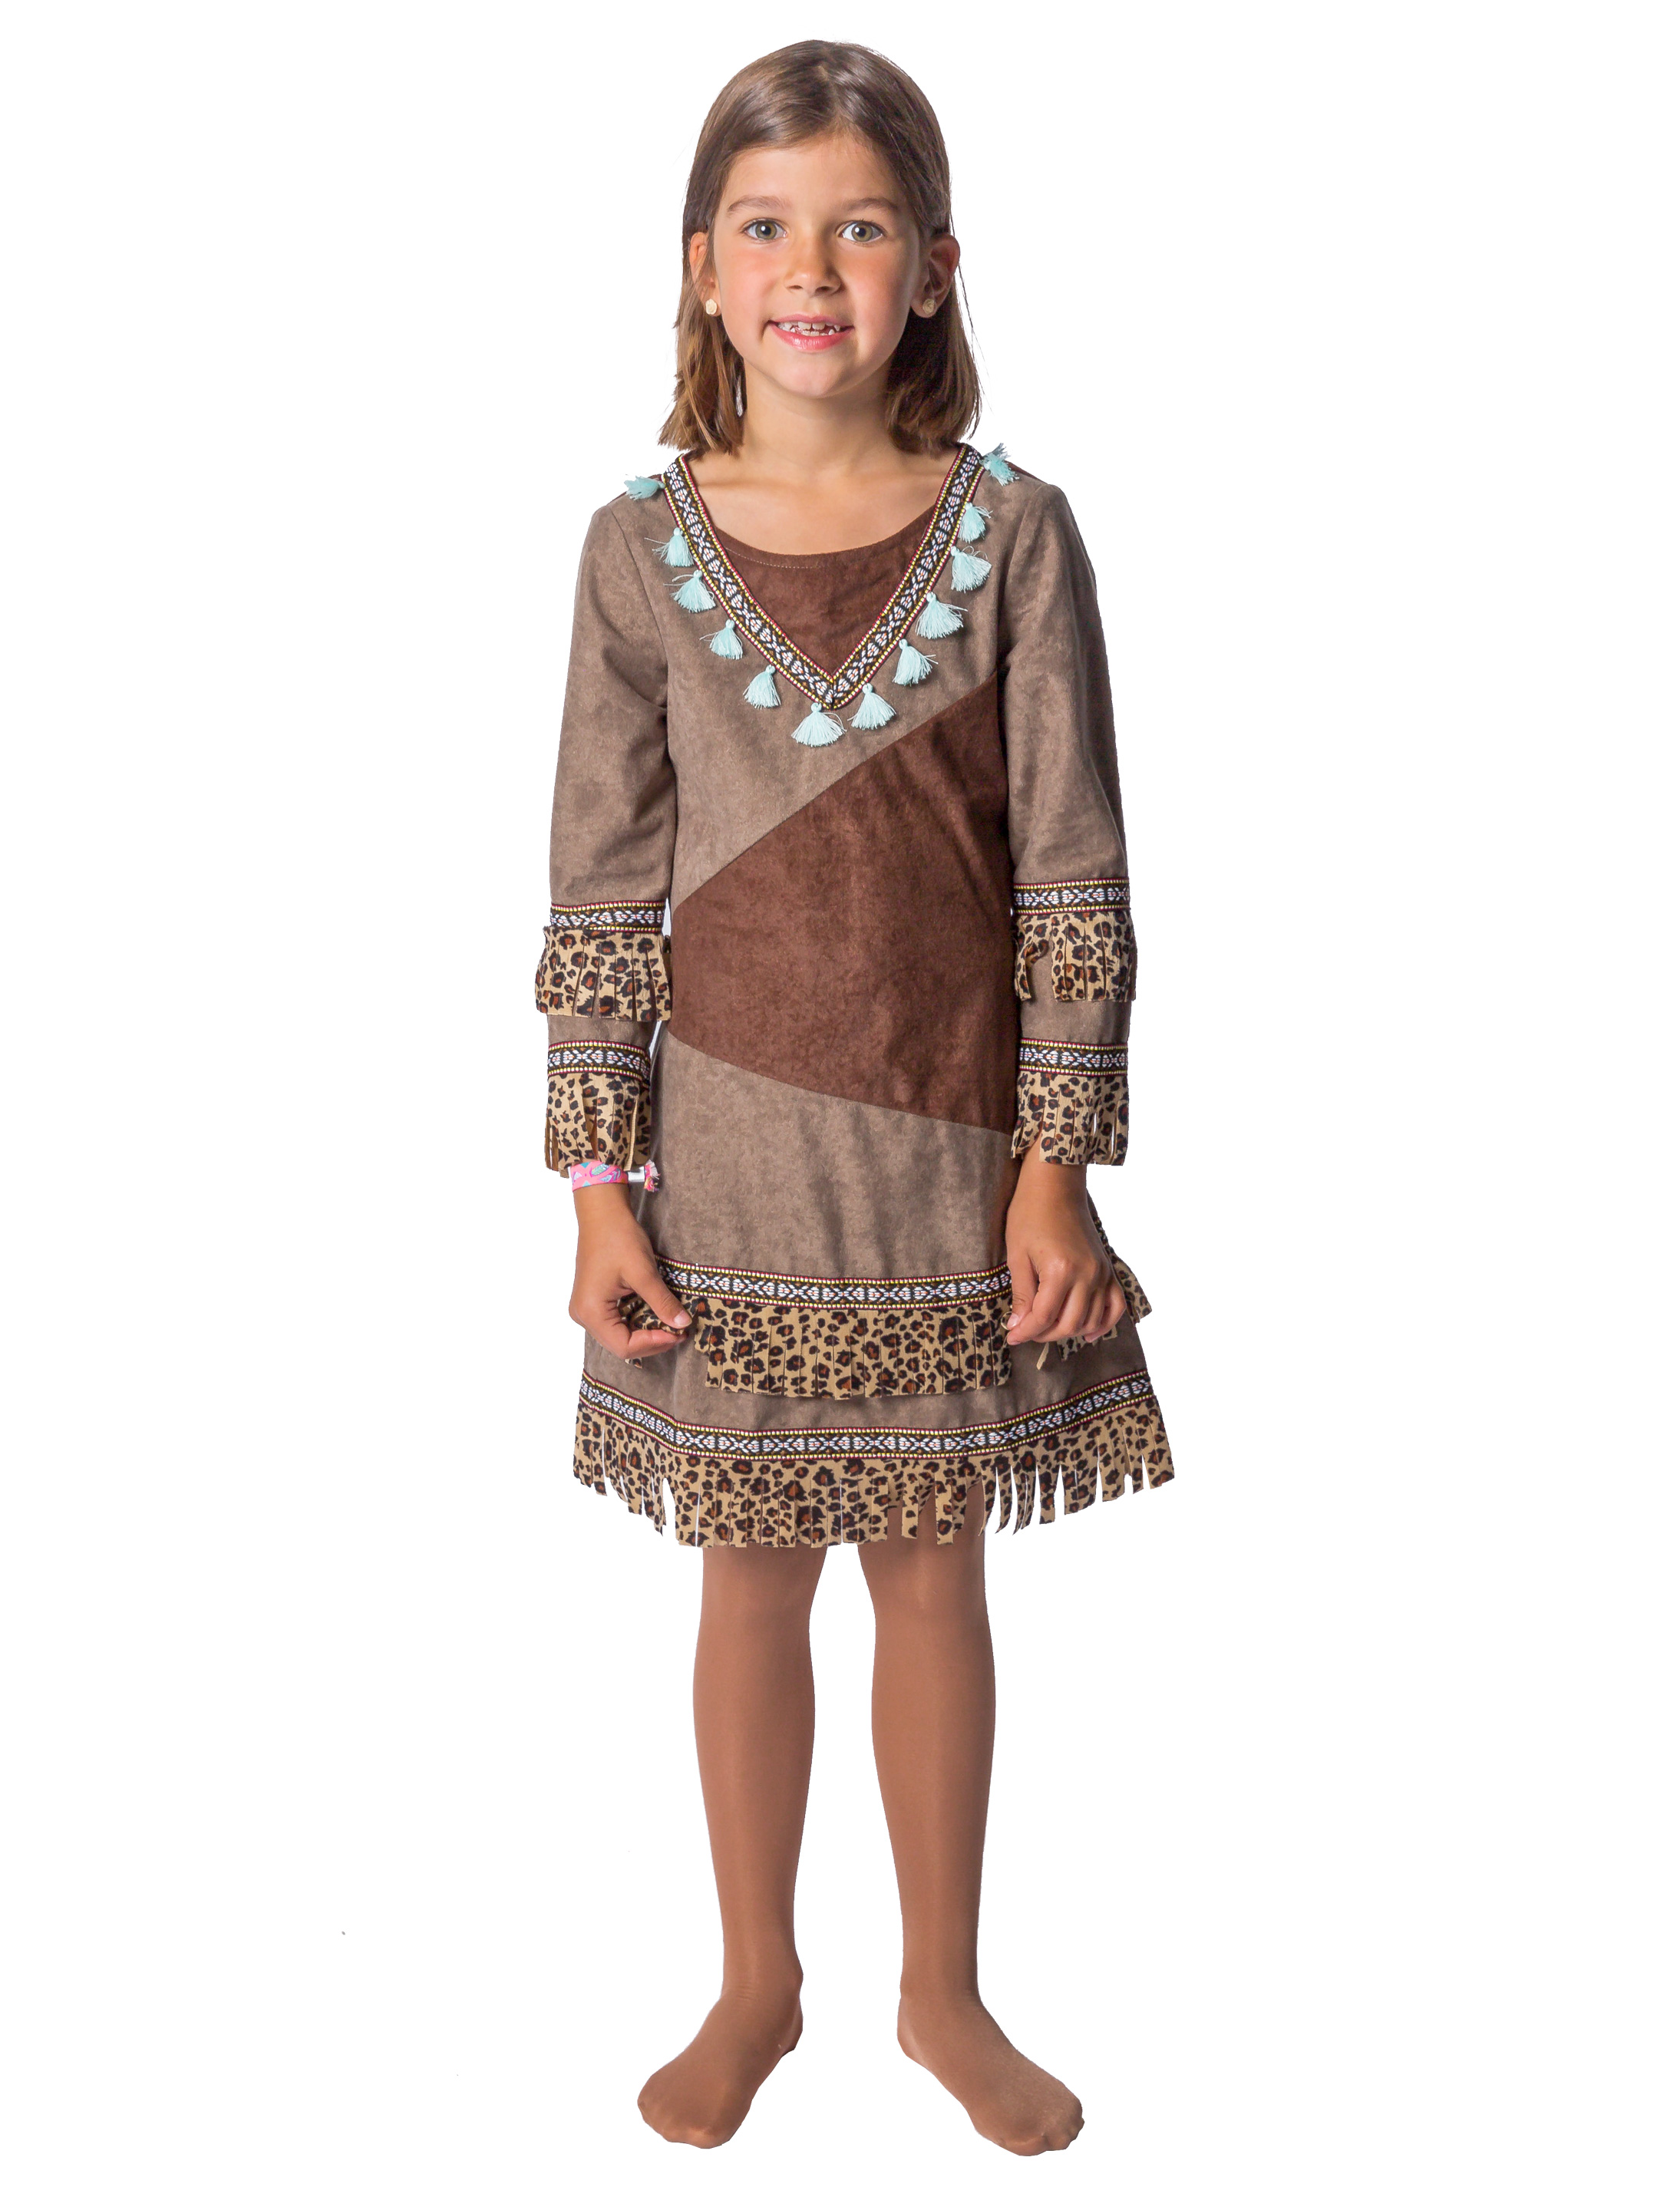 Kleid Indianerin Kinder Mädchen dunkelbraun 104